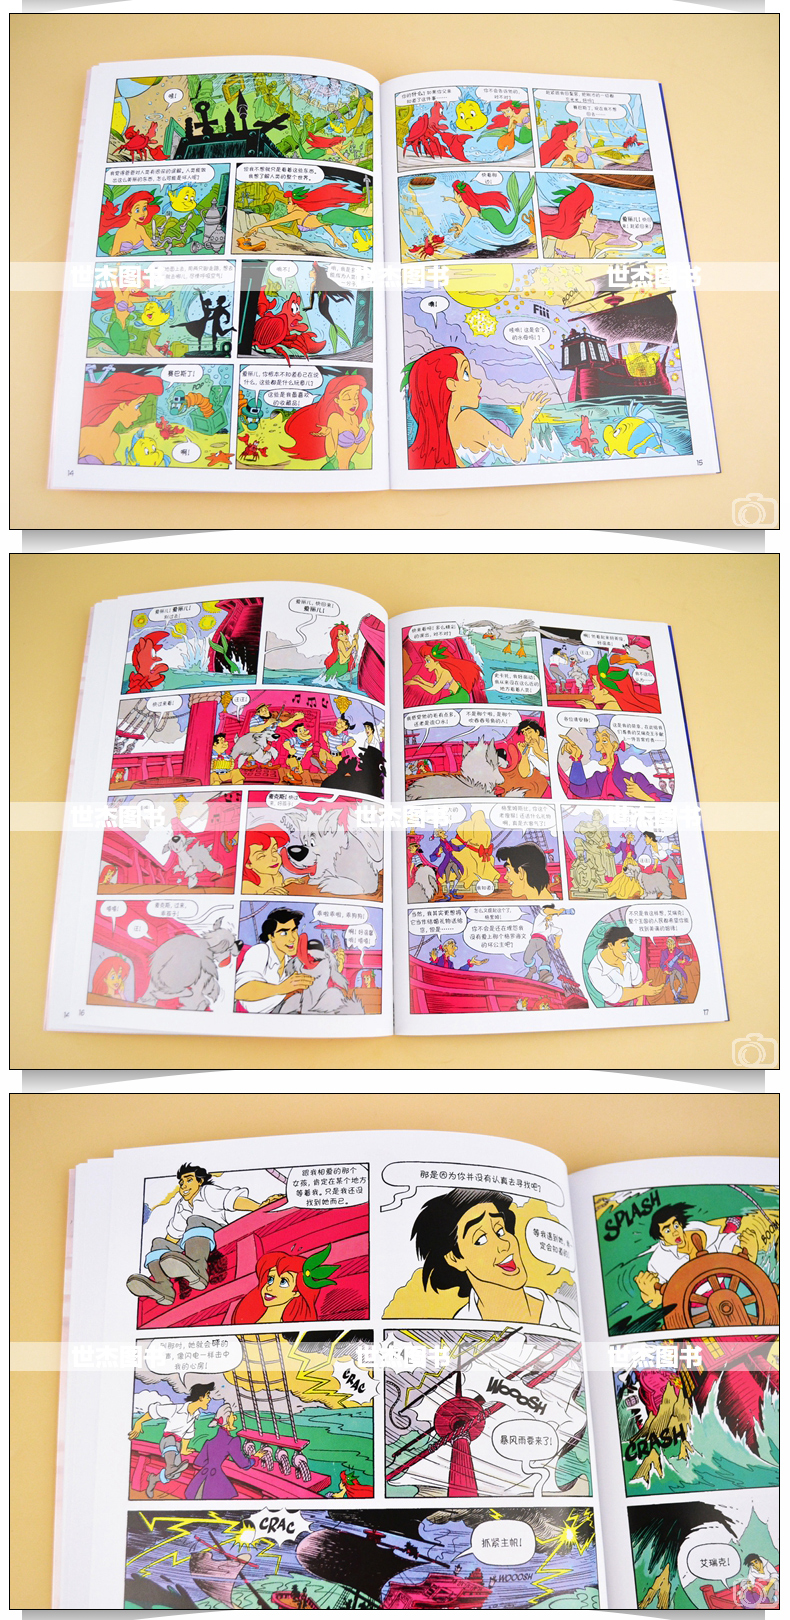 正版 迪士尼漫画《小美人鱼》Disney迪士尼皮克斯动画电影漫画典藏 安徒生童话海的女儿故事儿童漫画书小学生美术少儿绘本钢铁月球